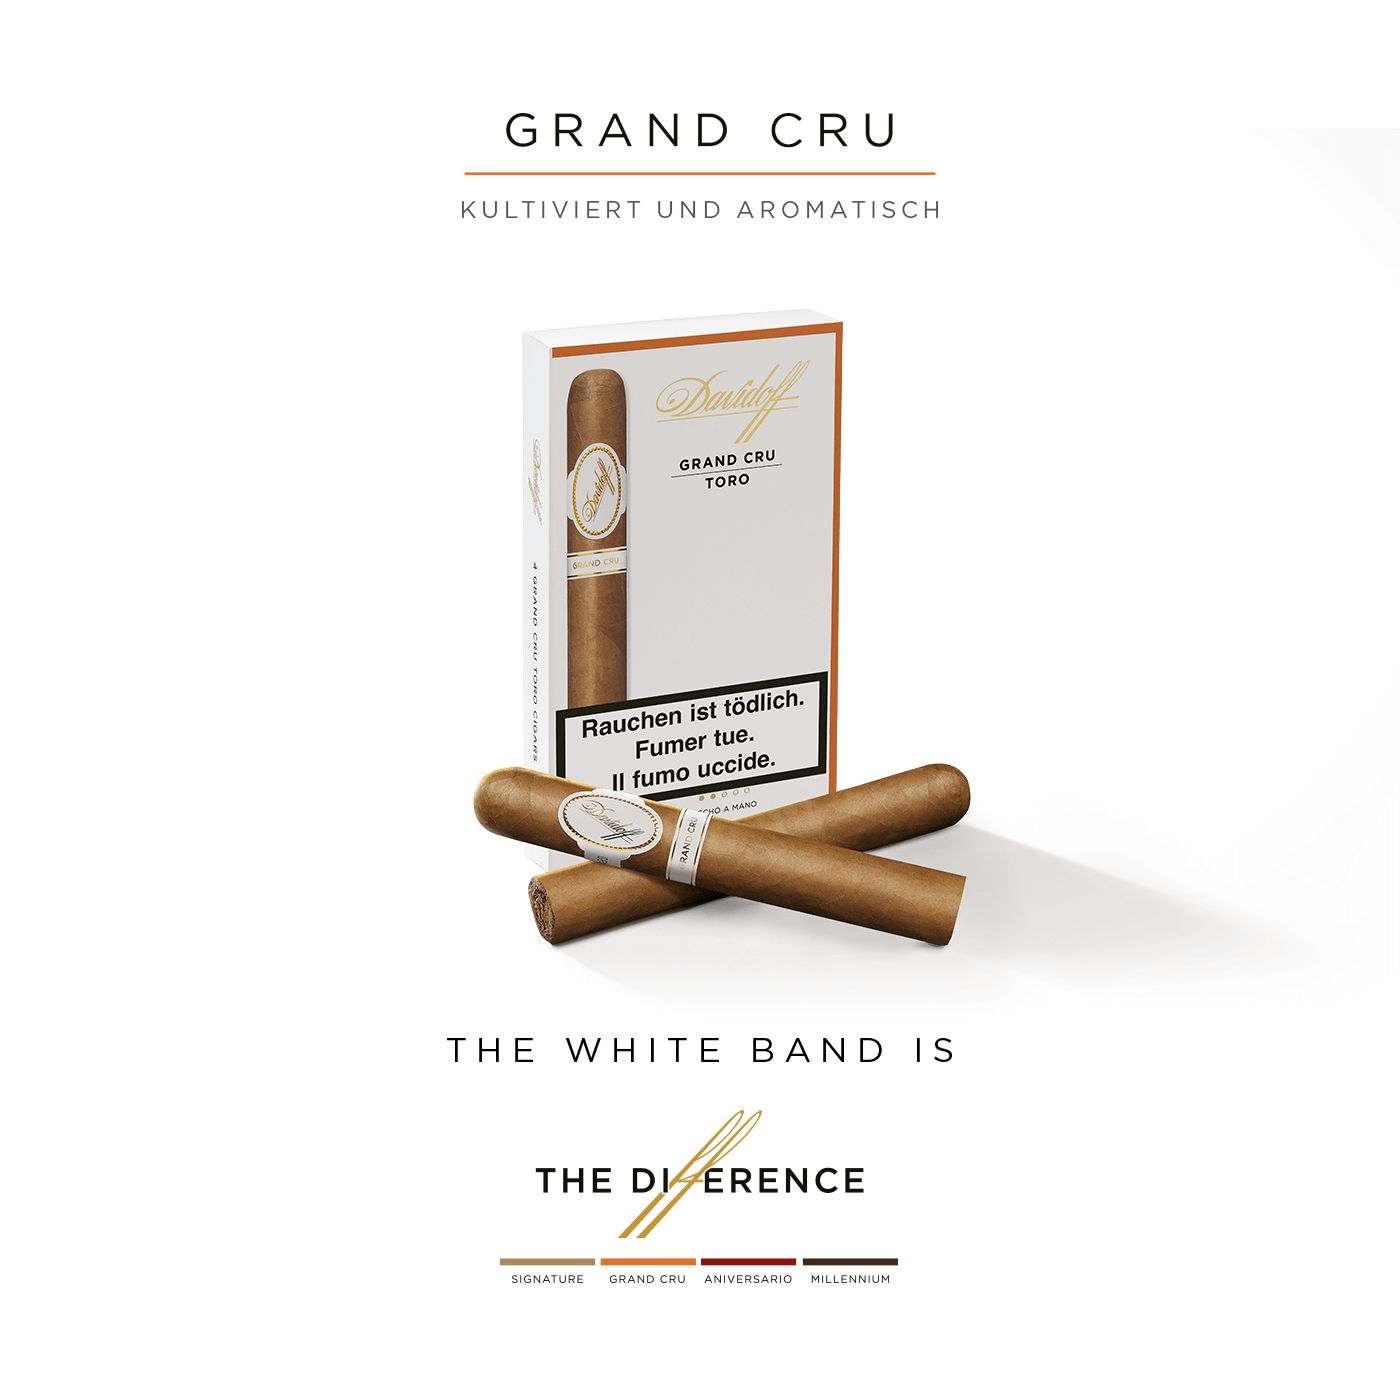 Zwei Davidoff Grand Cru Toro Zigarren, die gekreuzt vor ihrer Schachtel liegen.